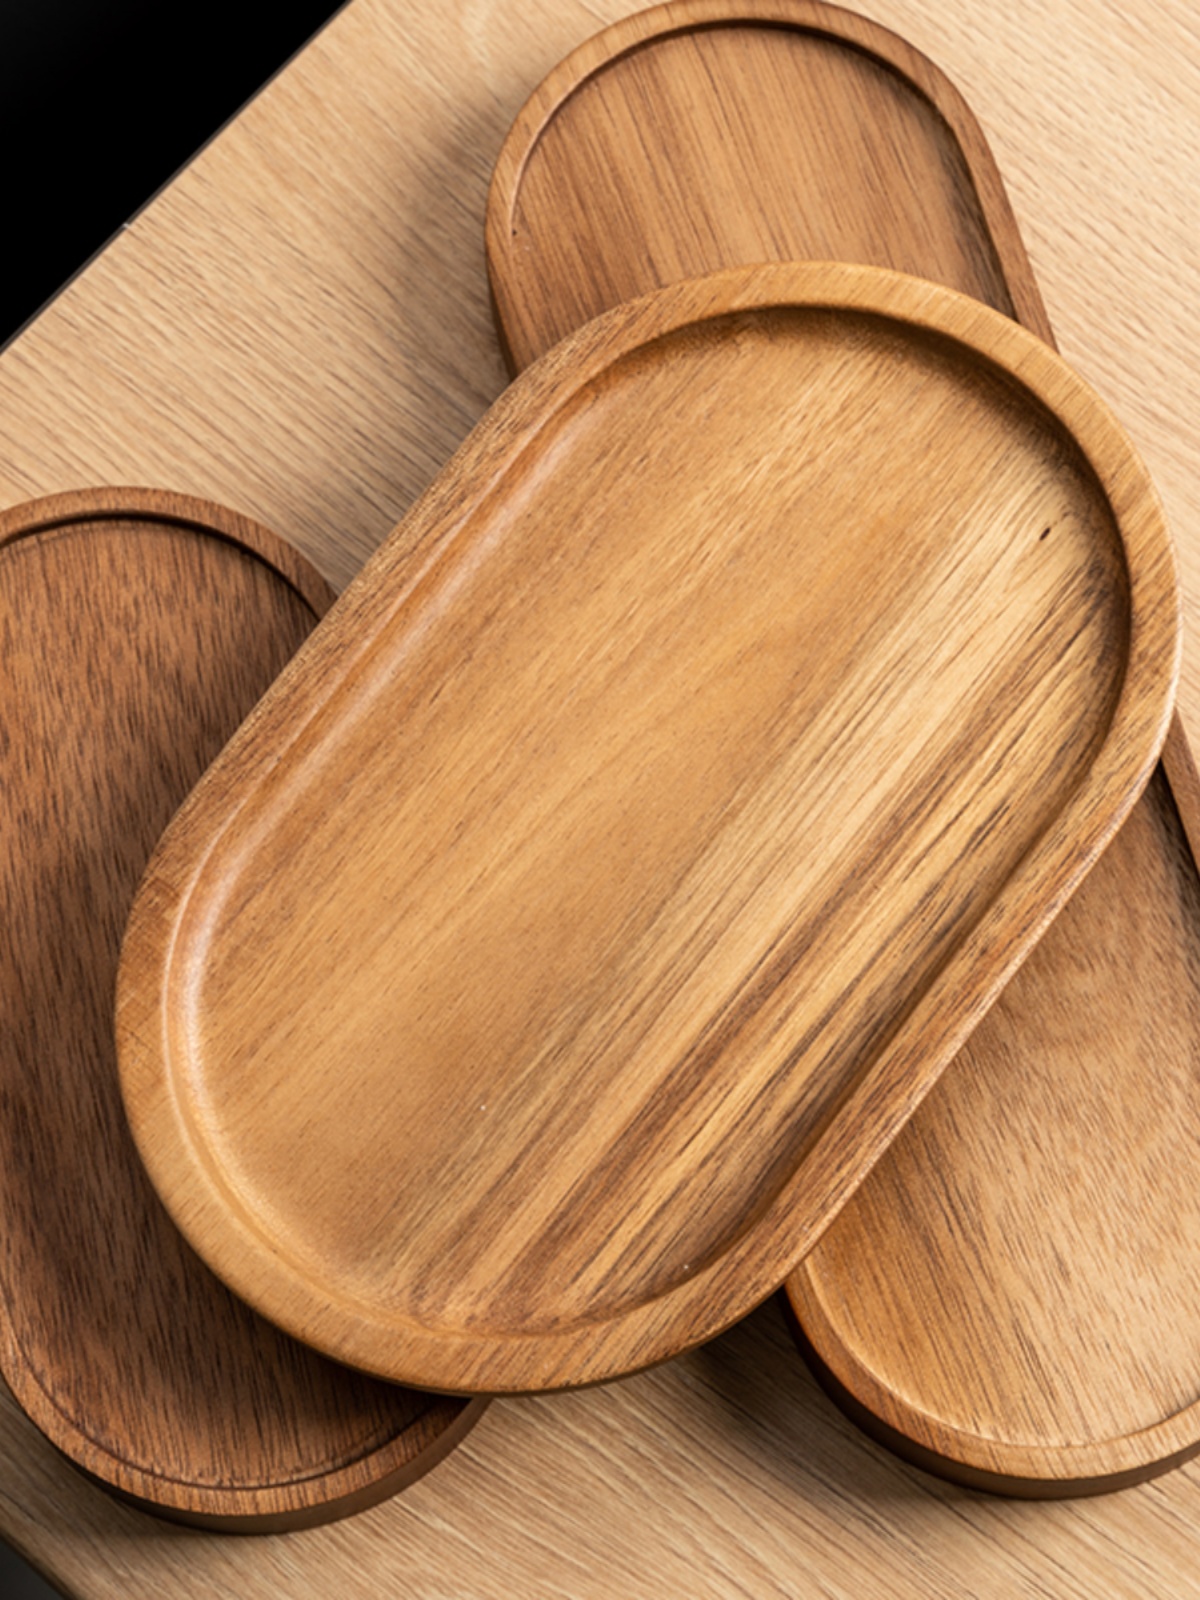 日式相思木質橢圓形託盤 精緻小託盤下午茶咖啡餐盤